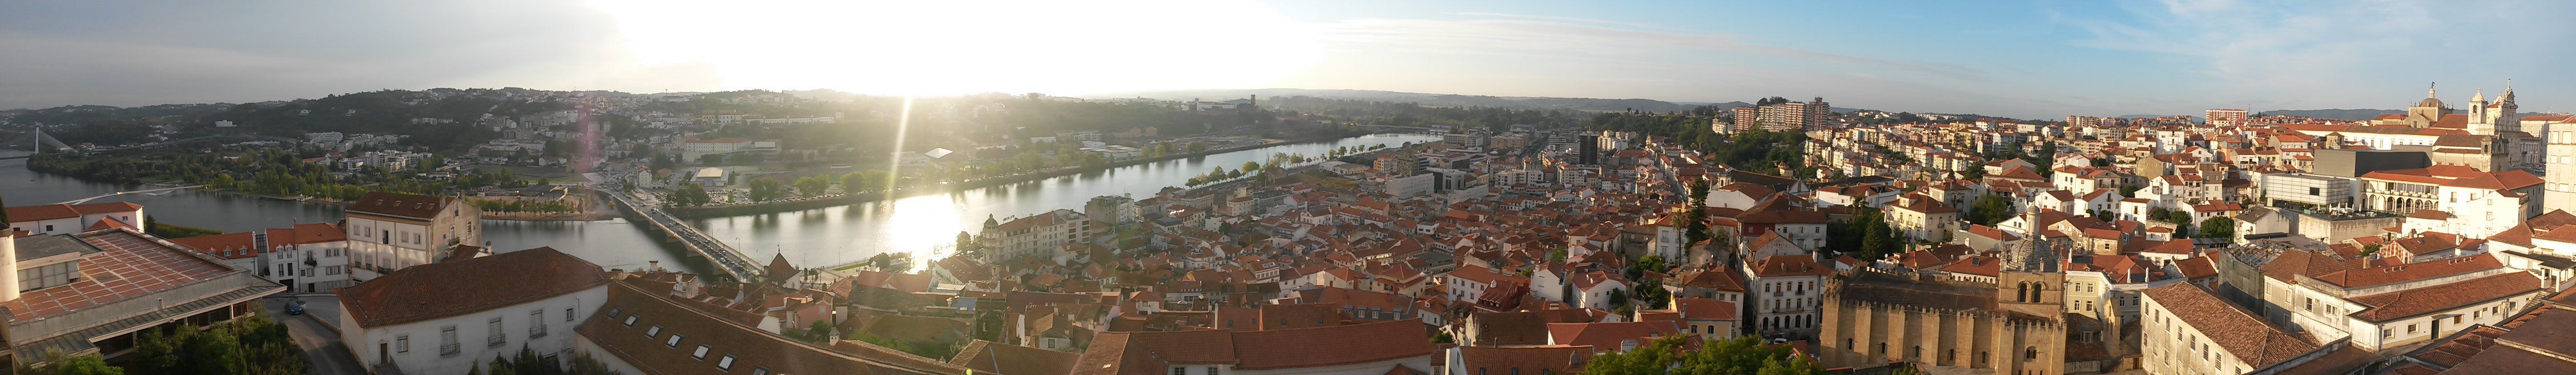 Ezt a képet az egyetem erkélyéről készítettem. Coimbra a Montego folyó két partján terül el.